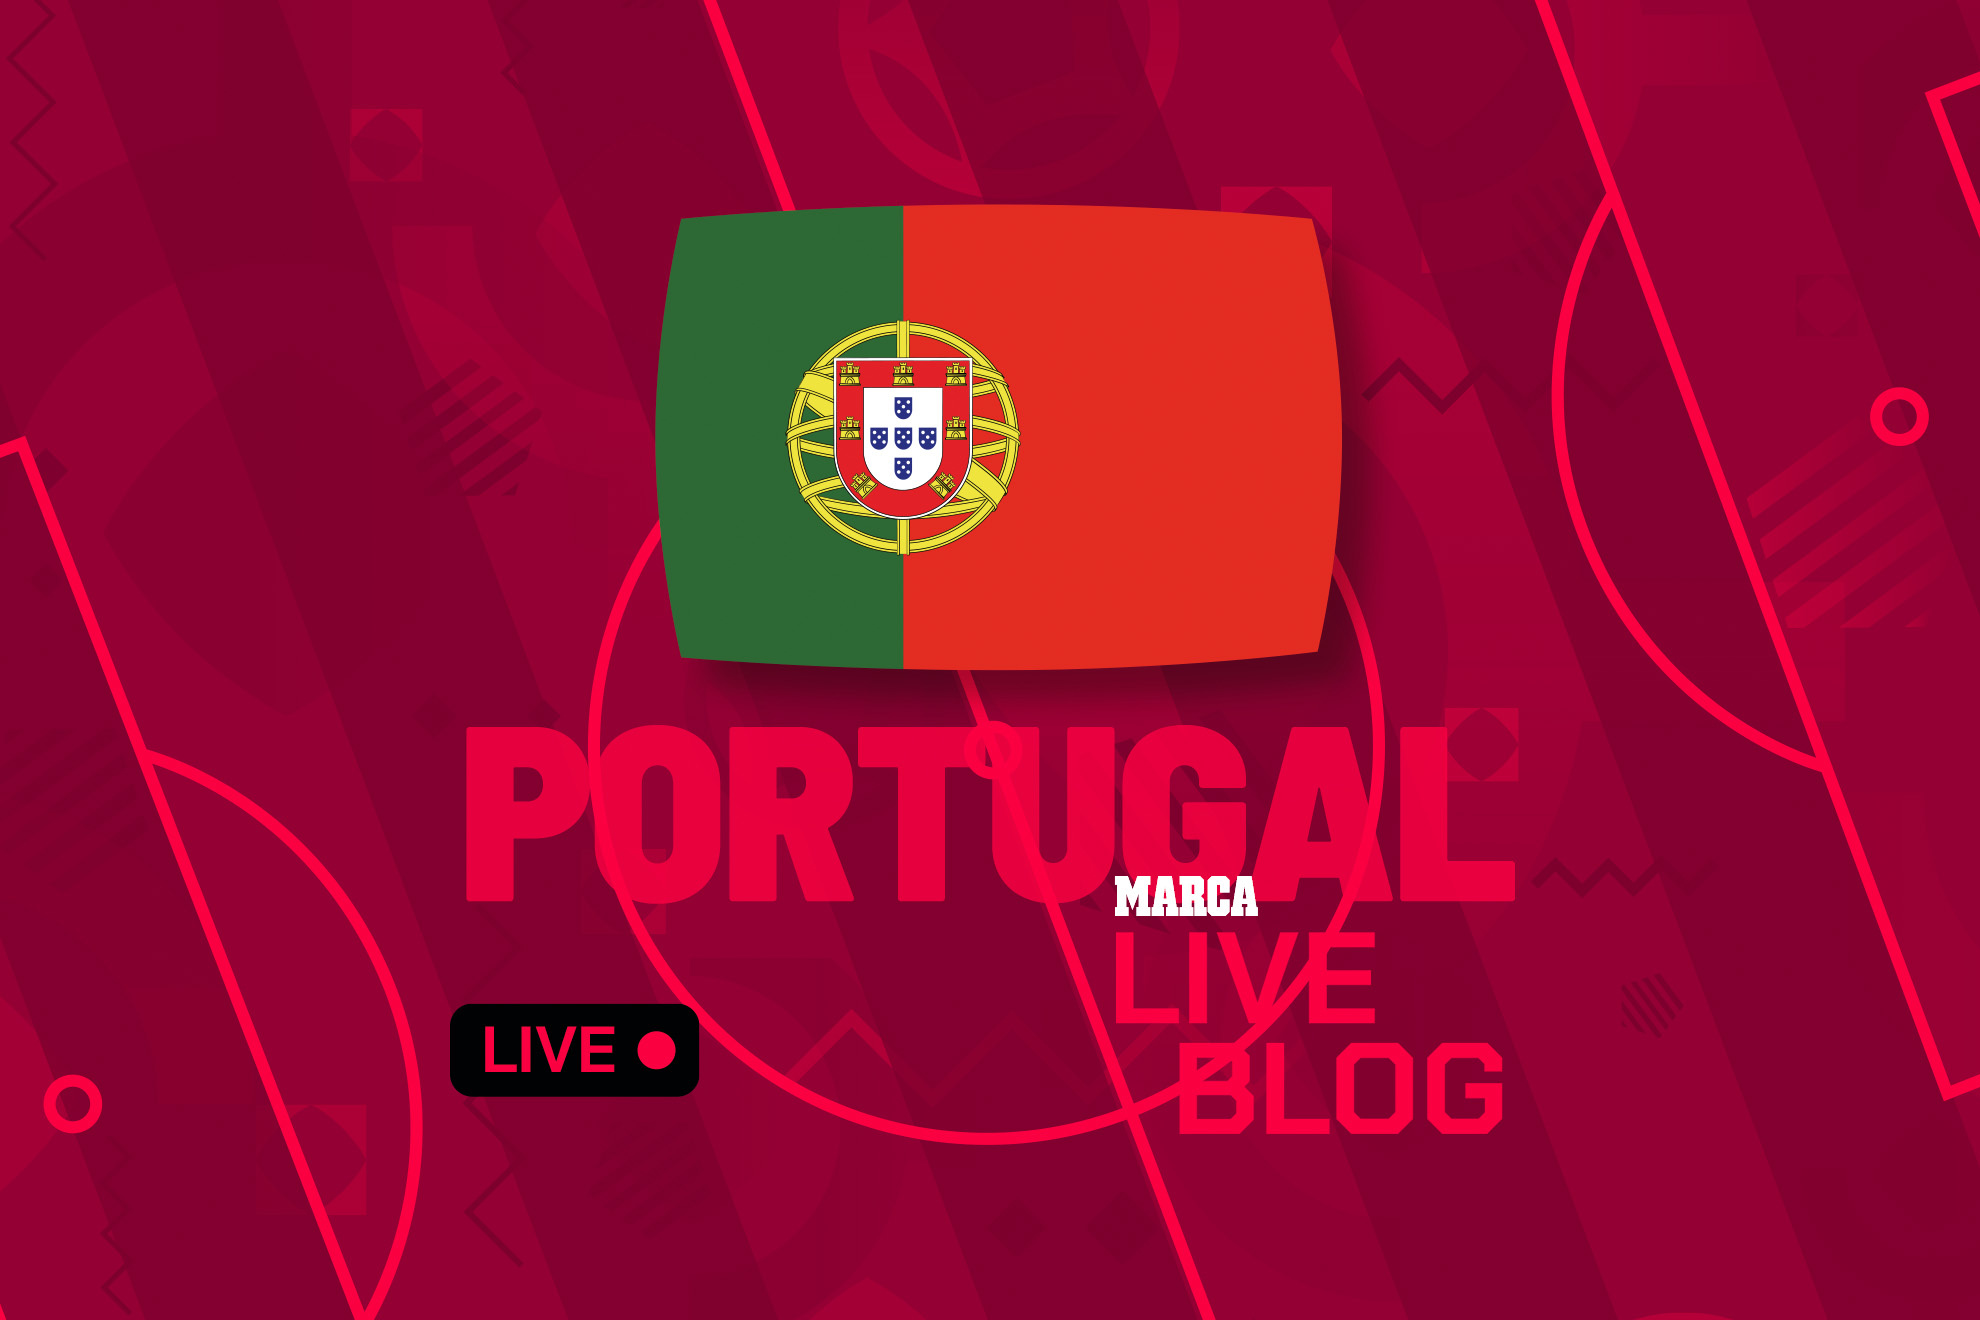 Portugal en el Mundial de Qatar, en directo | Última hora sobre la selección portuguesa en la Copa del Mundo hoy en vivo